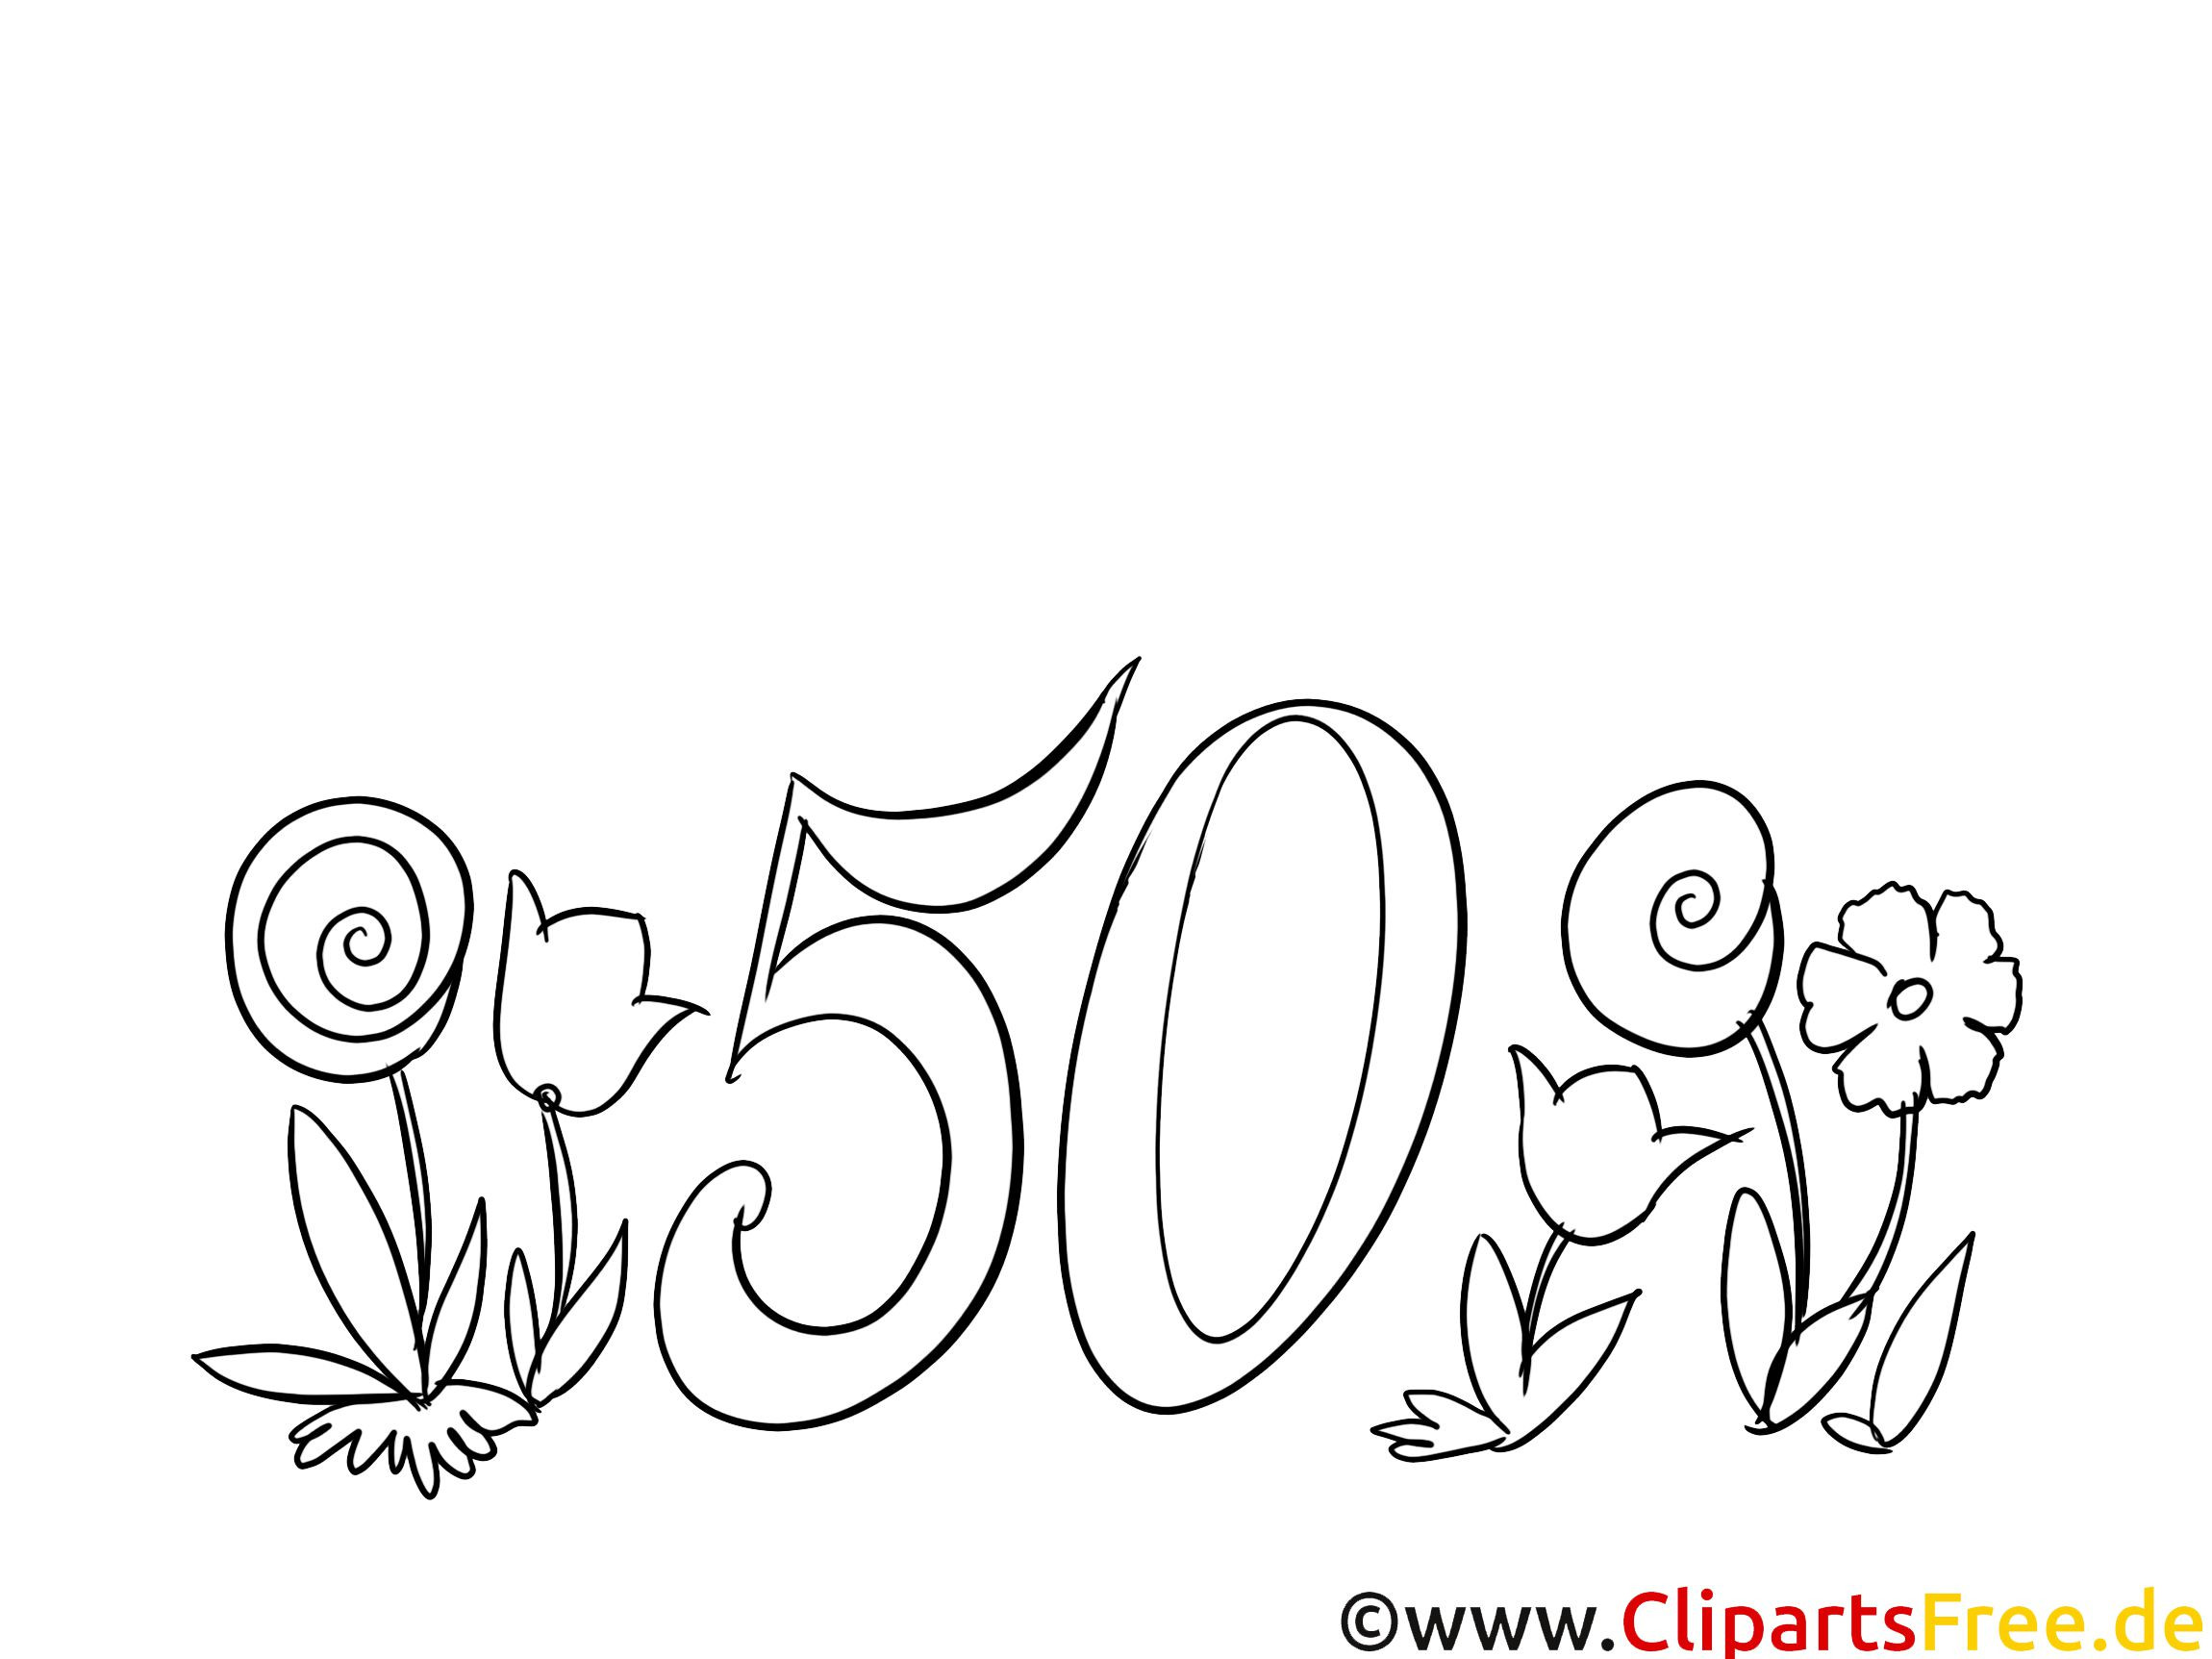 Geburtstagswünsche Zum 50 Geburtstag Frau
 Einladungskarten 50 Geburtstag Frau